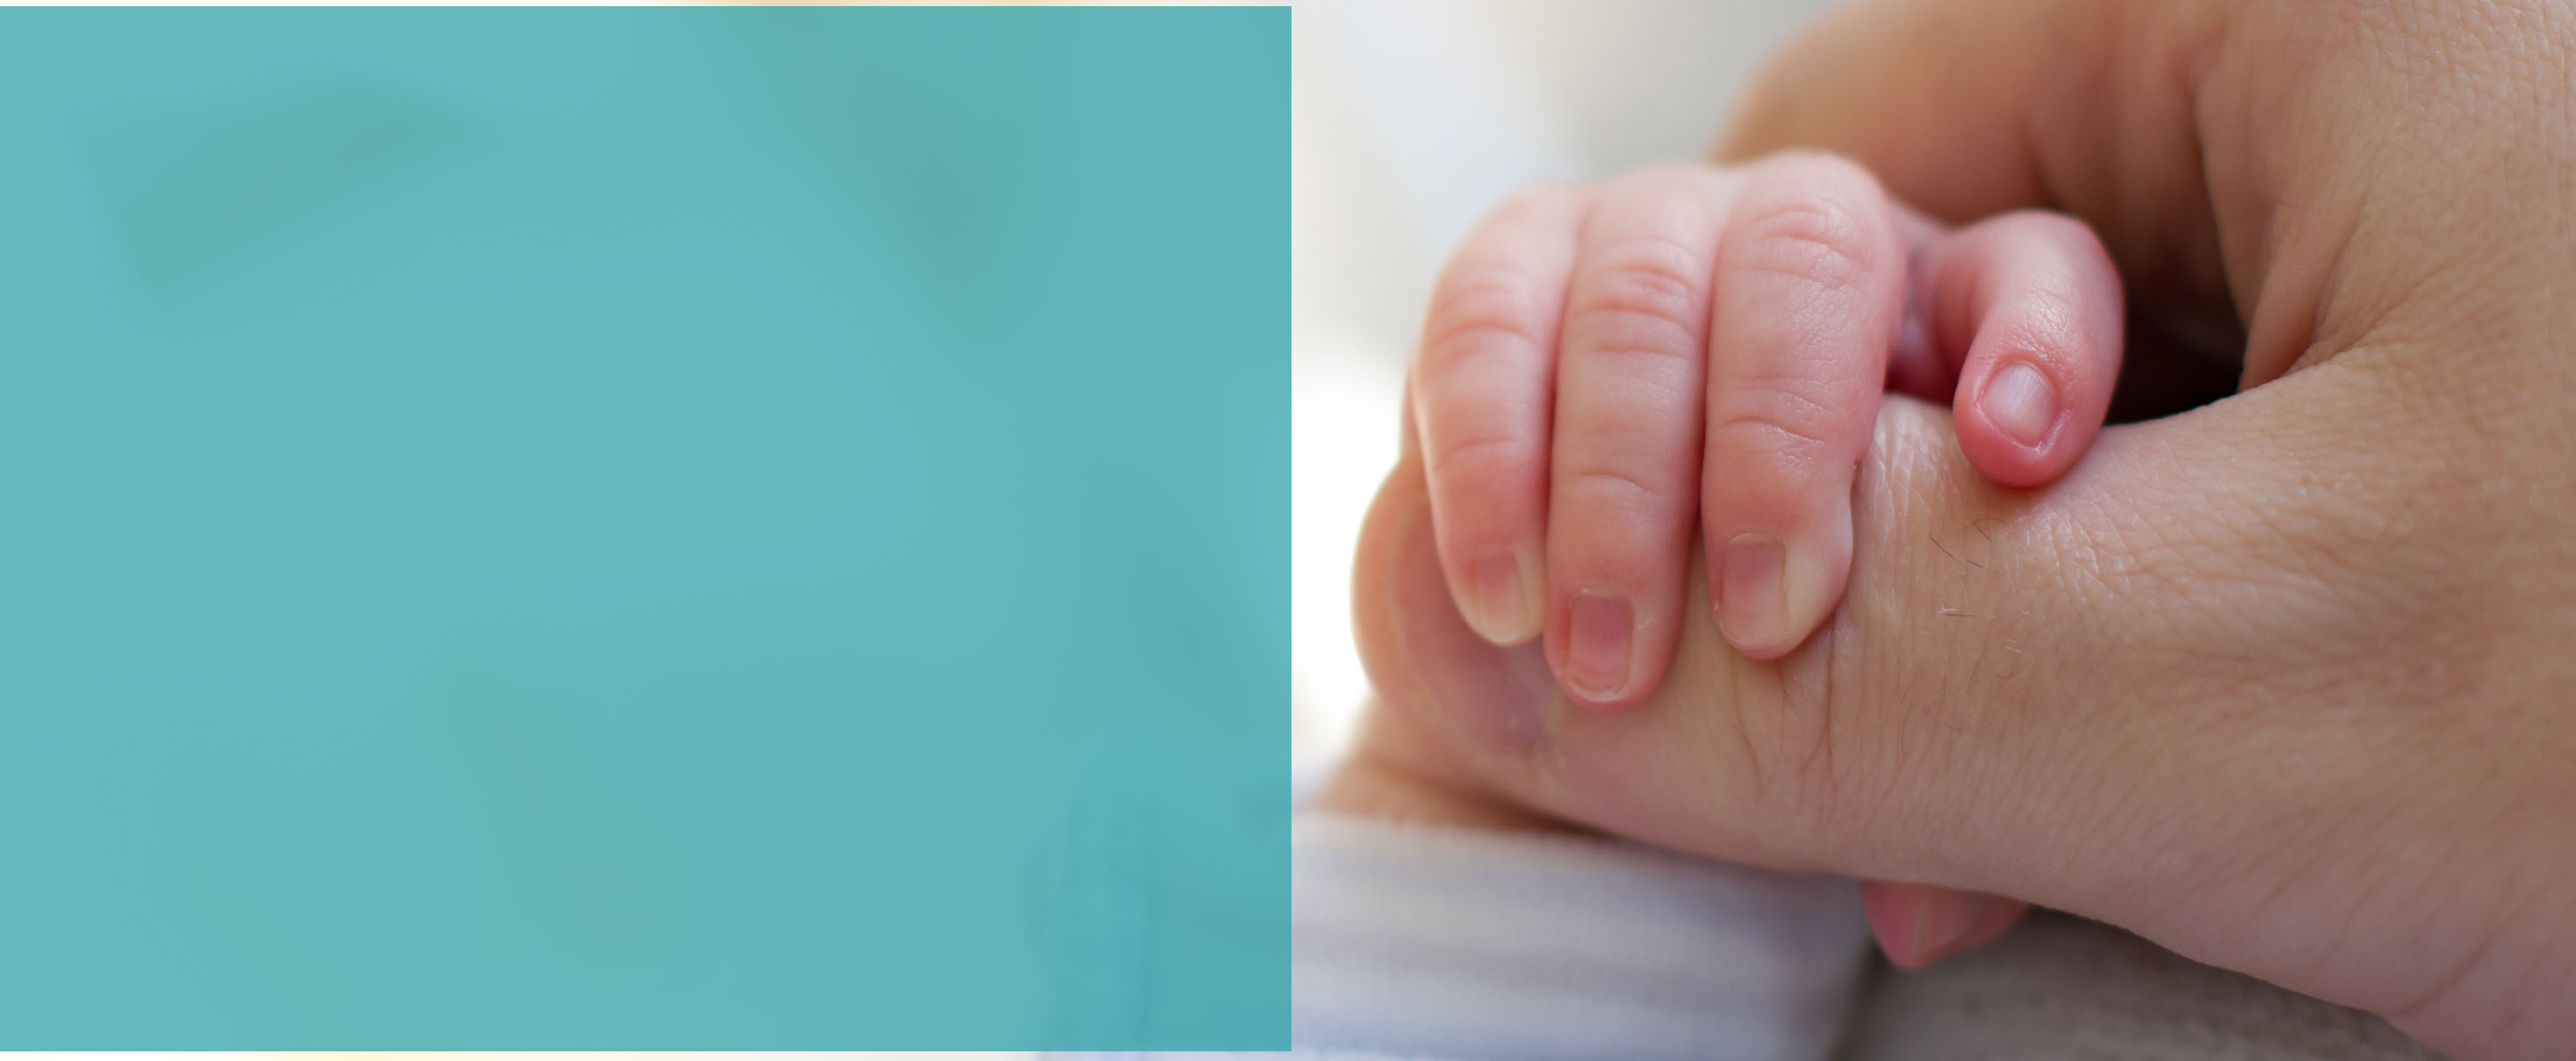 Newborn baby touching his mother hand